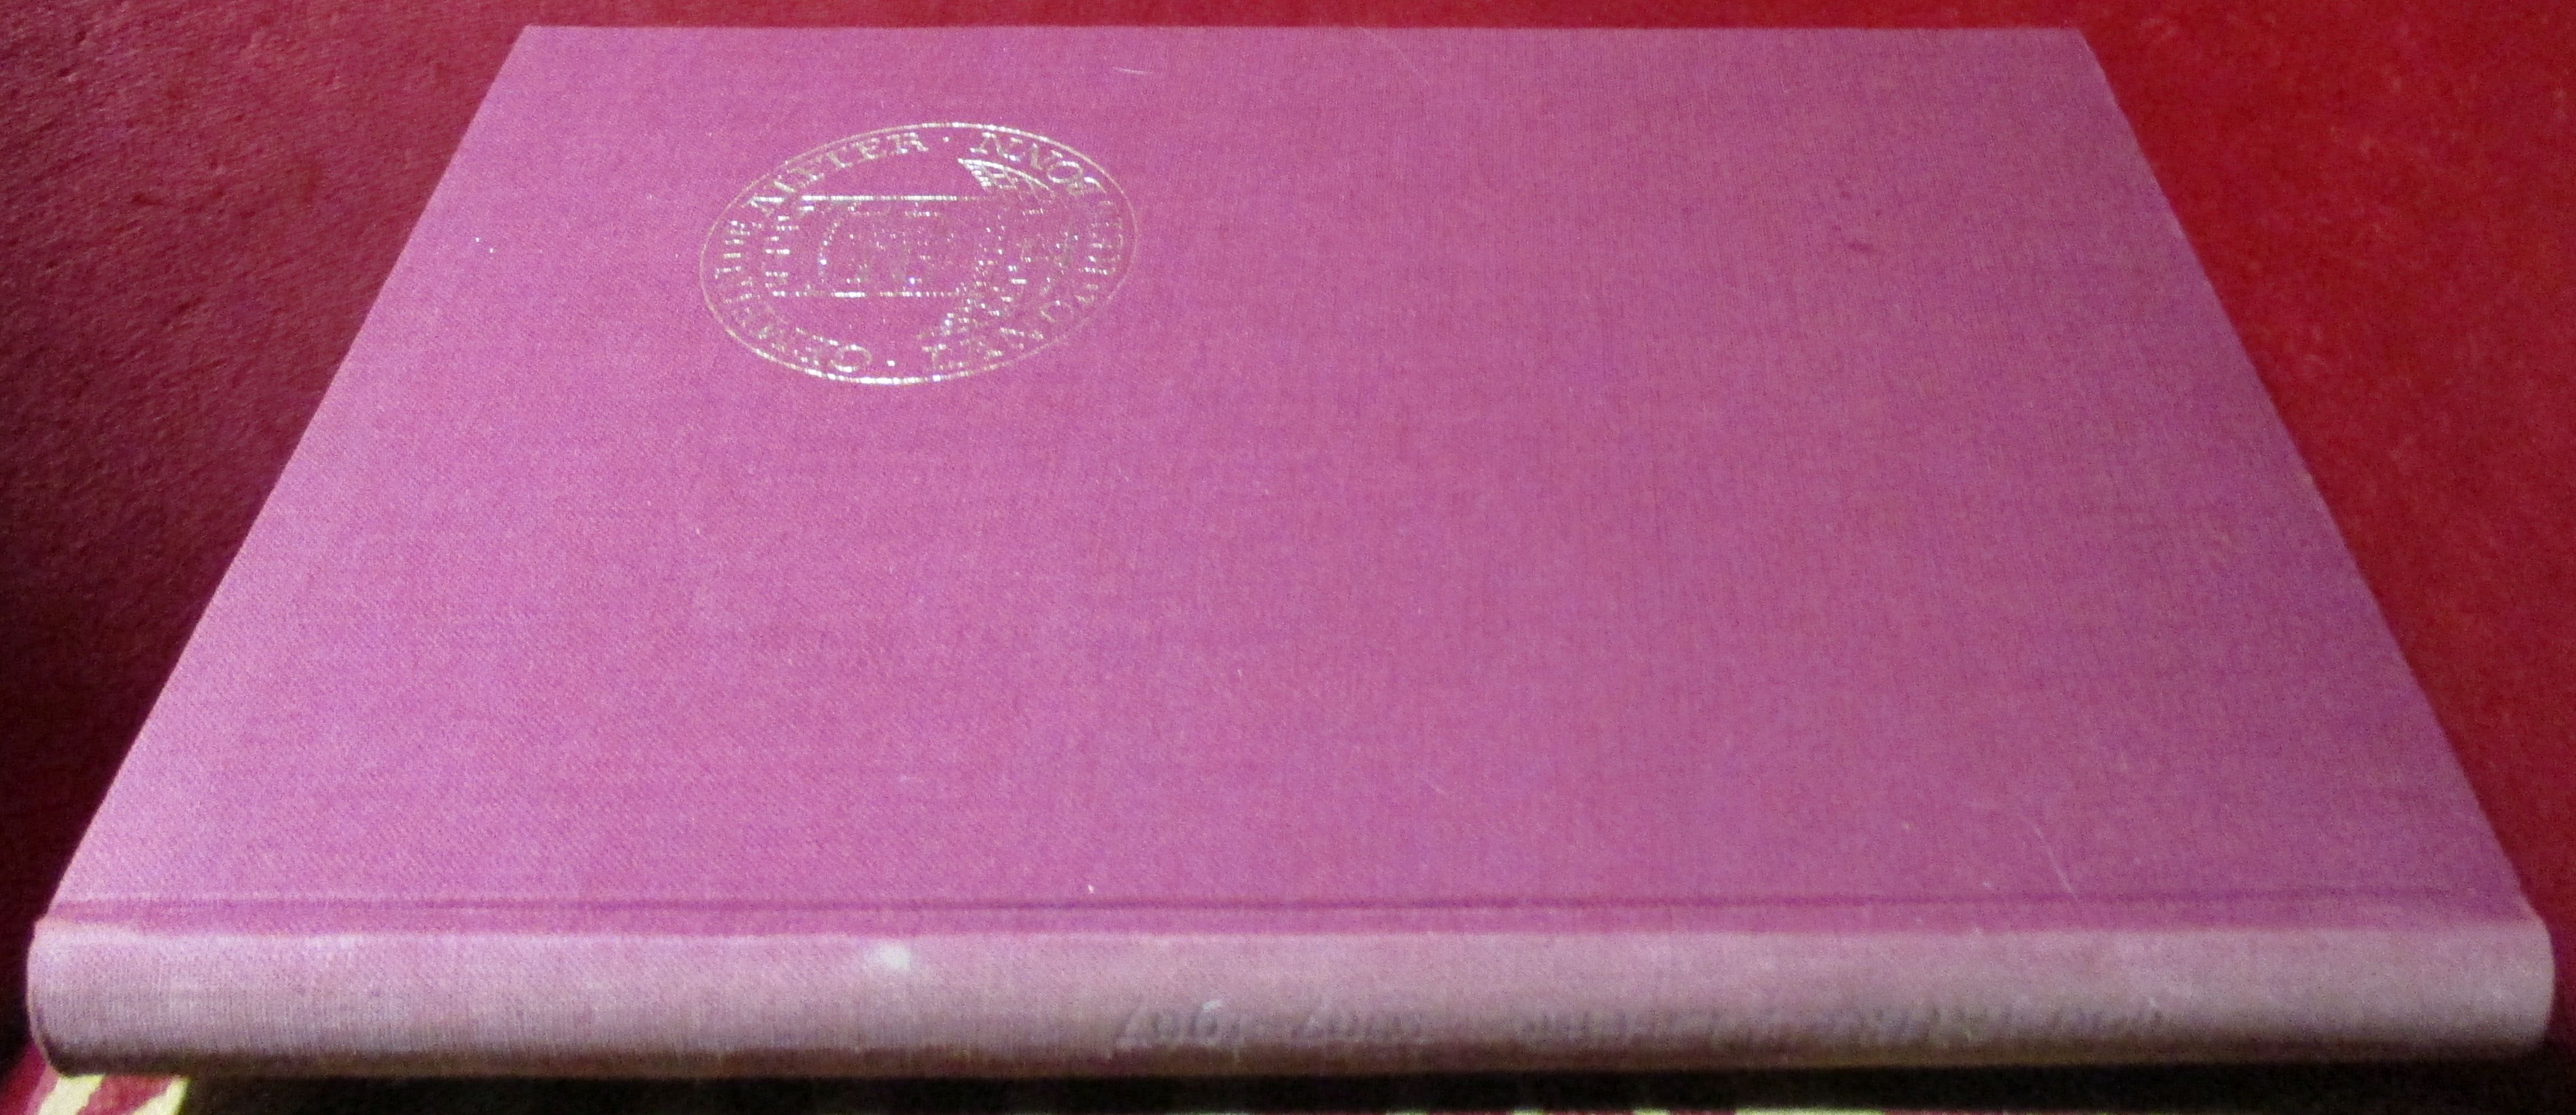 Herausgegeben von Gemeinde Alfter 900 Jahre Alfter 1067-1967  Festschrift von Josef Dietz und Norbert Zerlett.